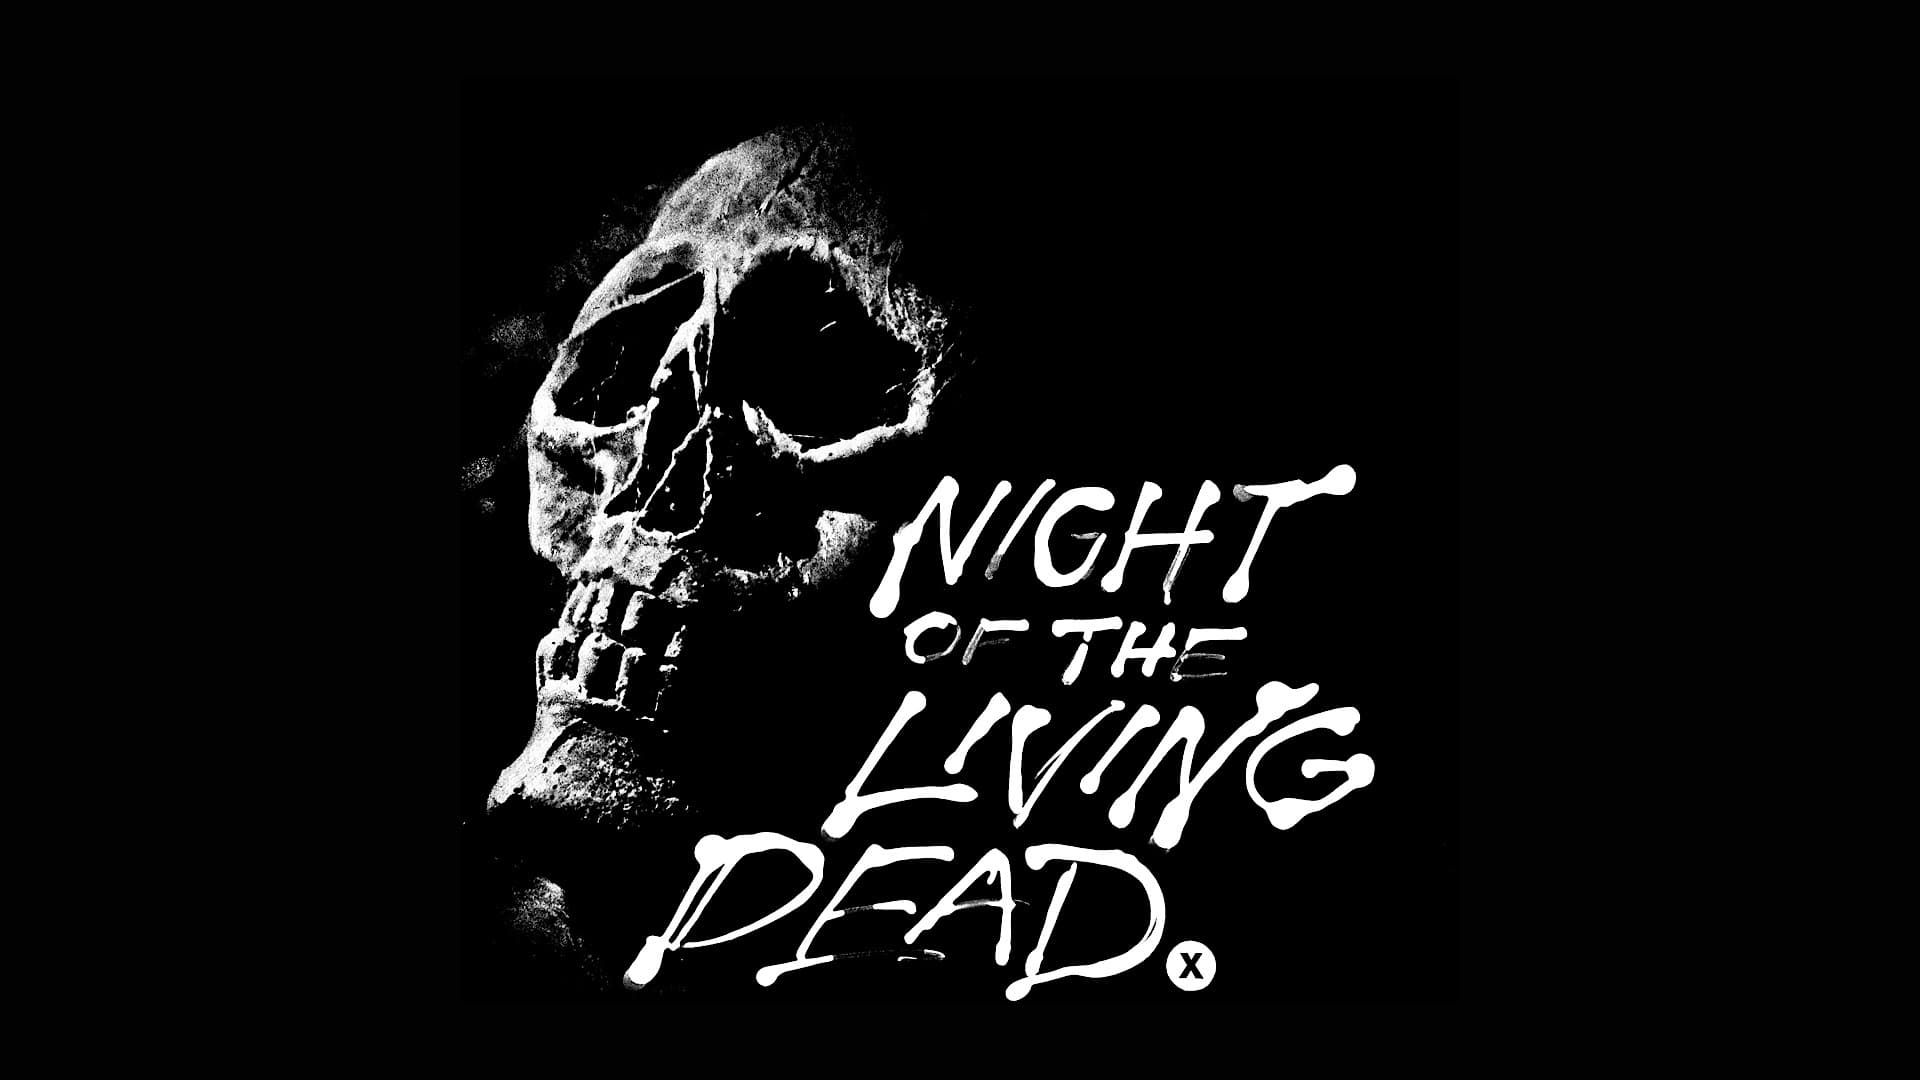 Noc oživlých mrtvol